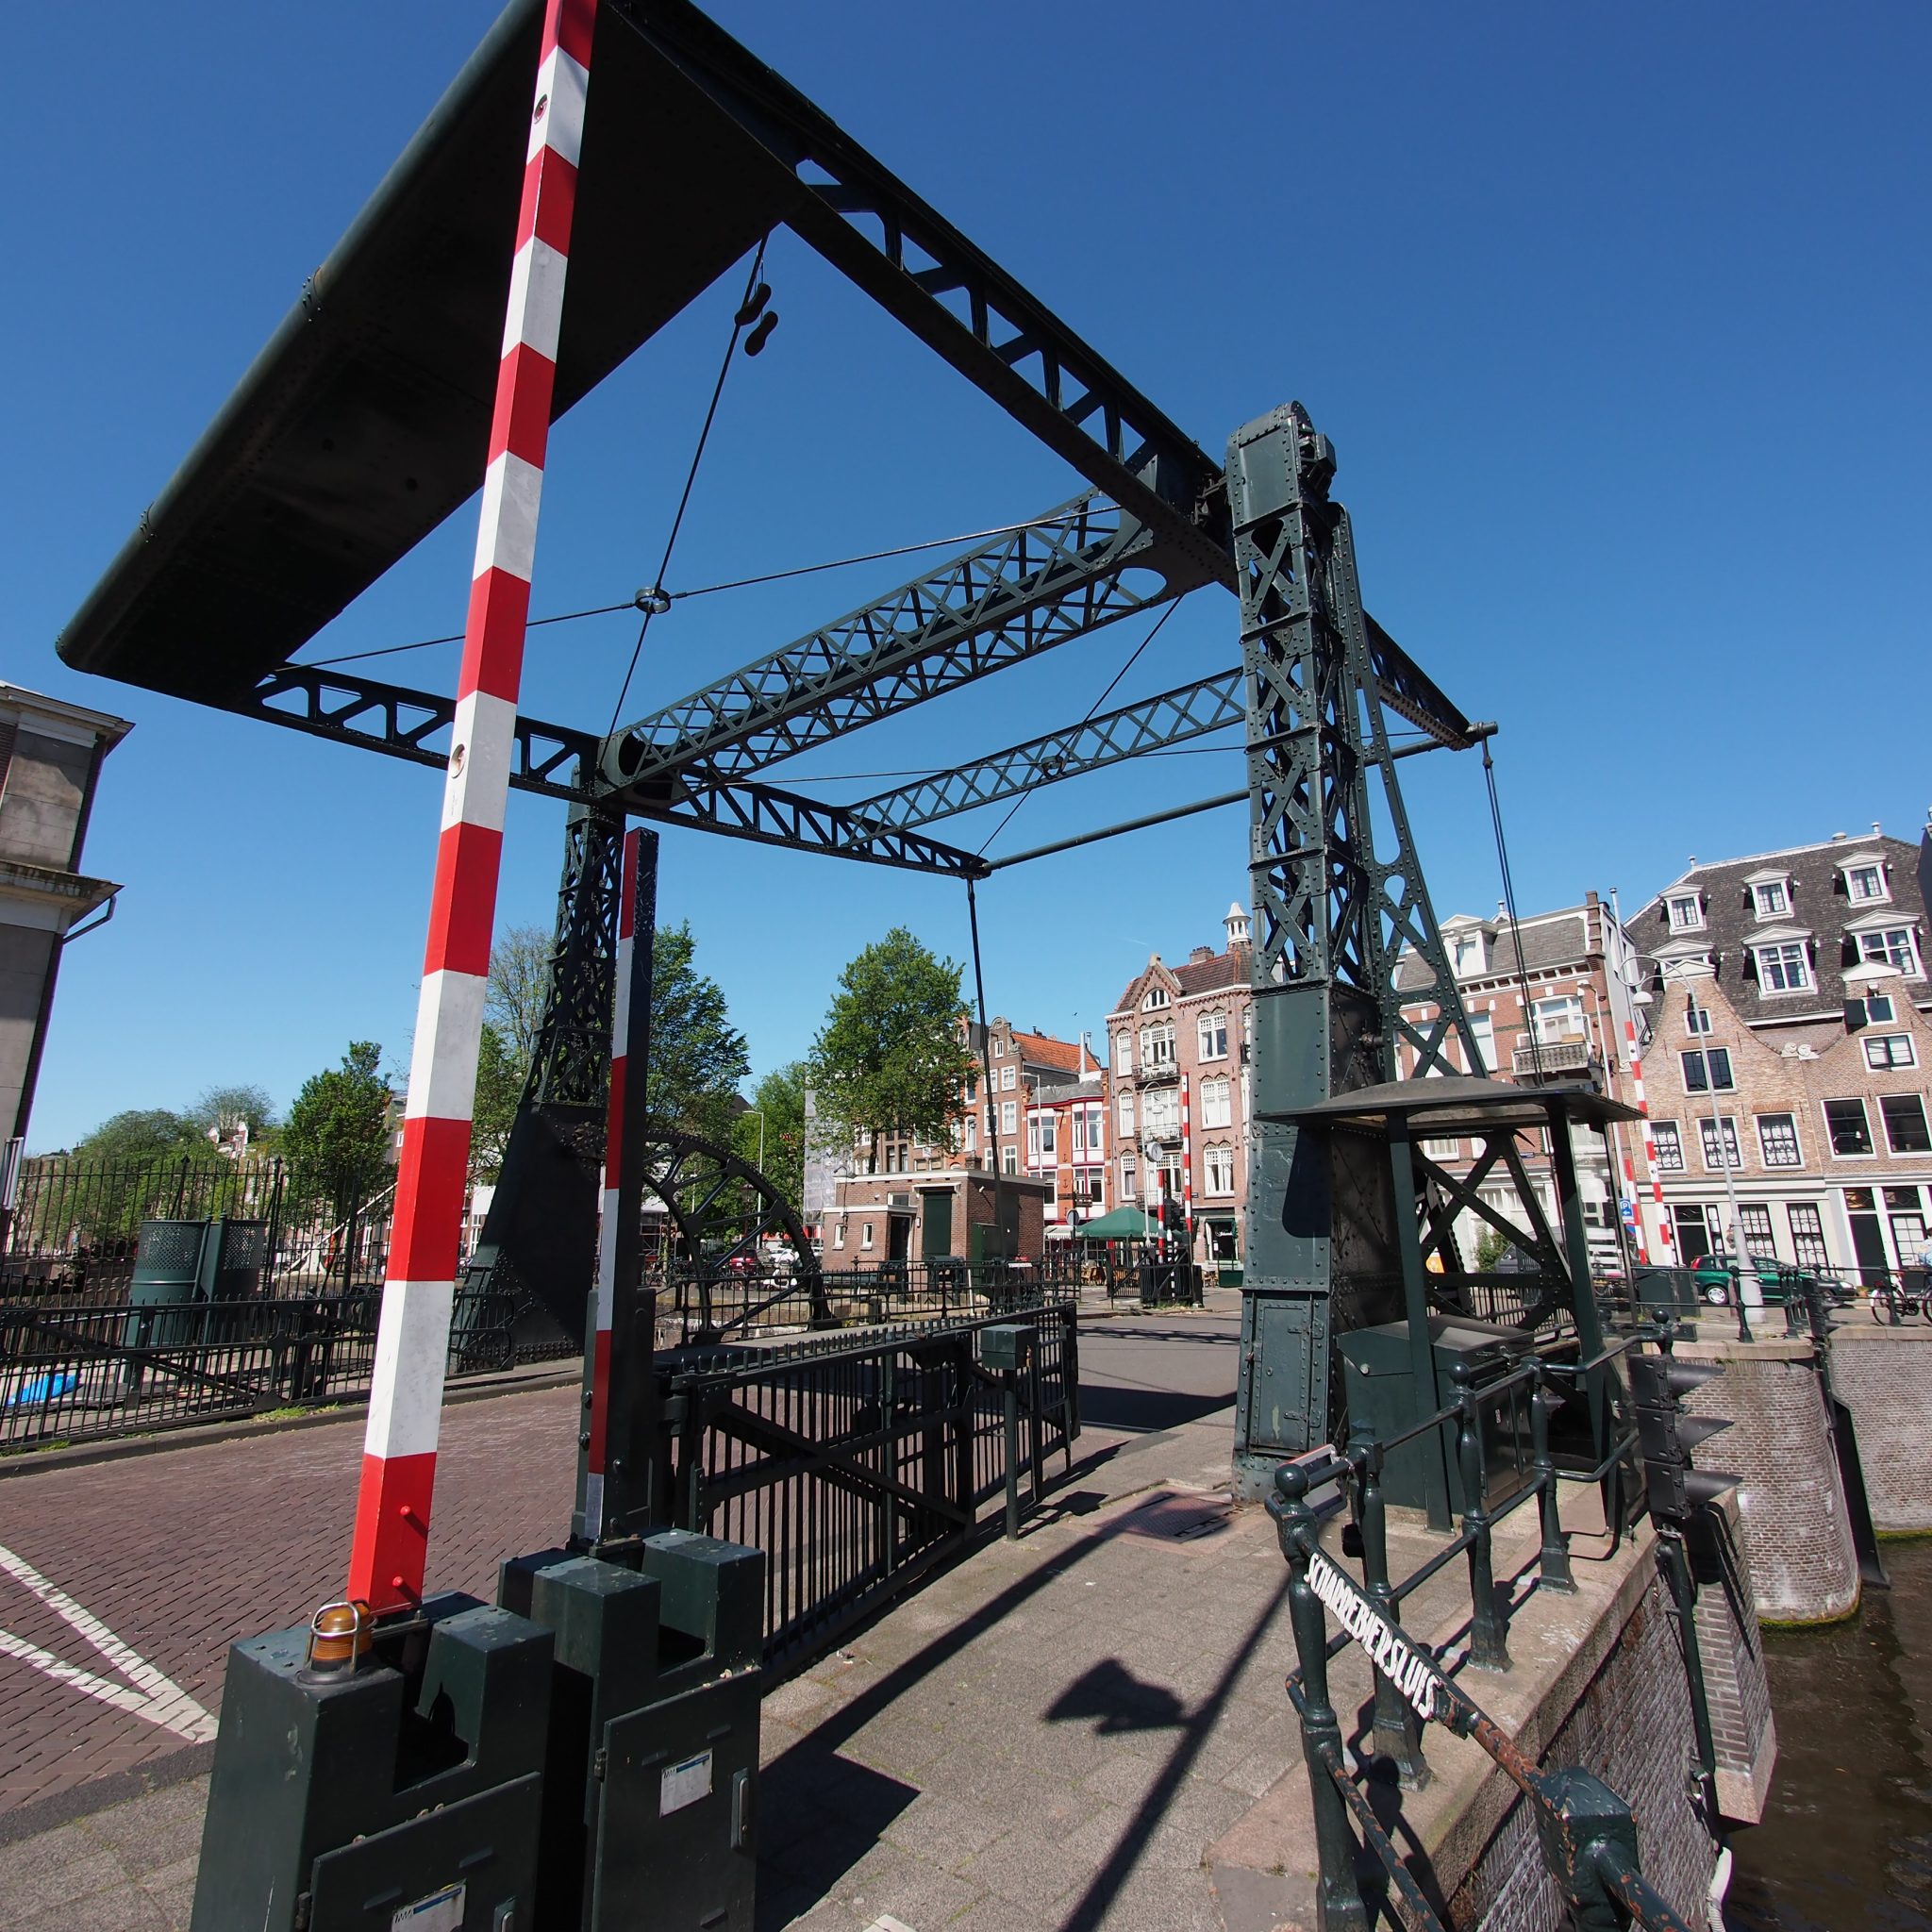 De inzet van lokale bediening in Amsterdam wordt nog verder bemoeilijkt doordat de brugwachterhuisjes zijn opgekocht als hotels. (Foto Wikimedia Commons)